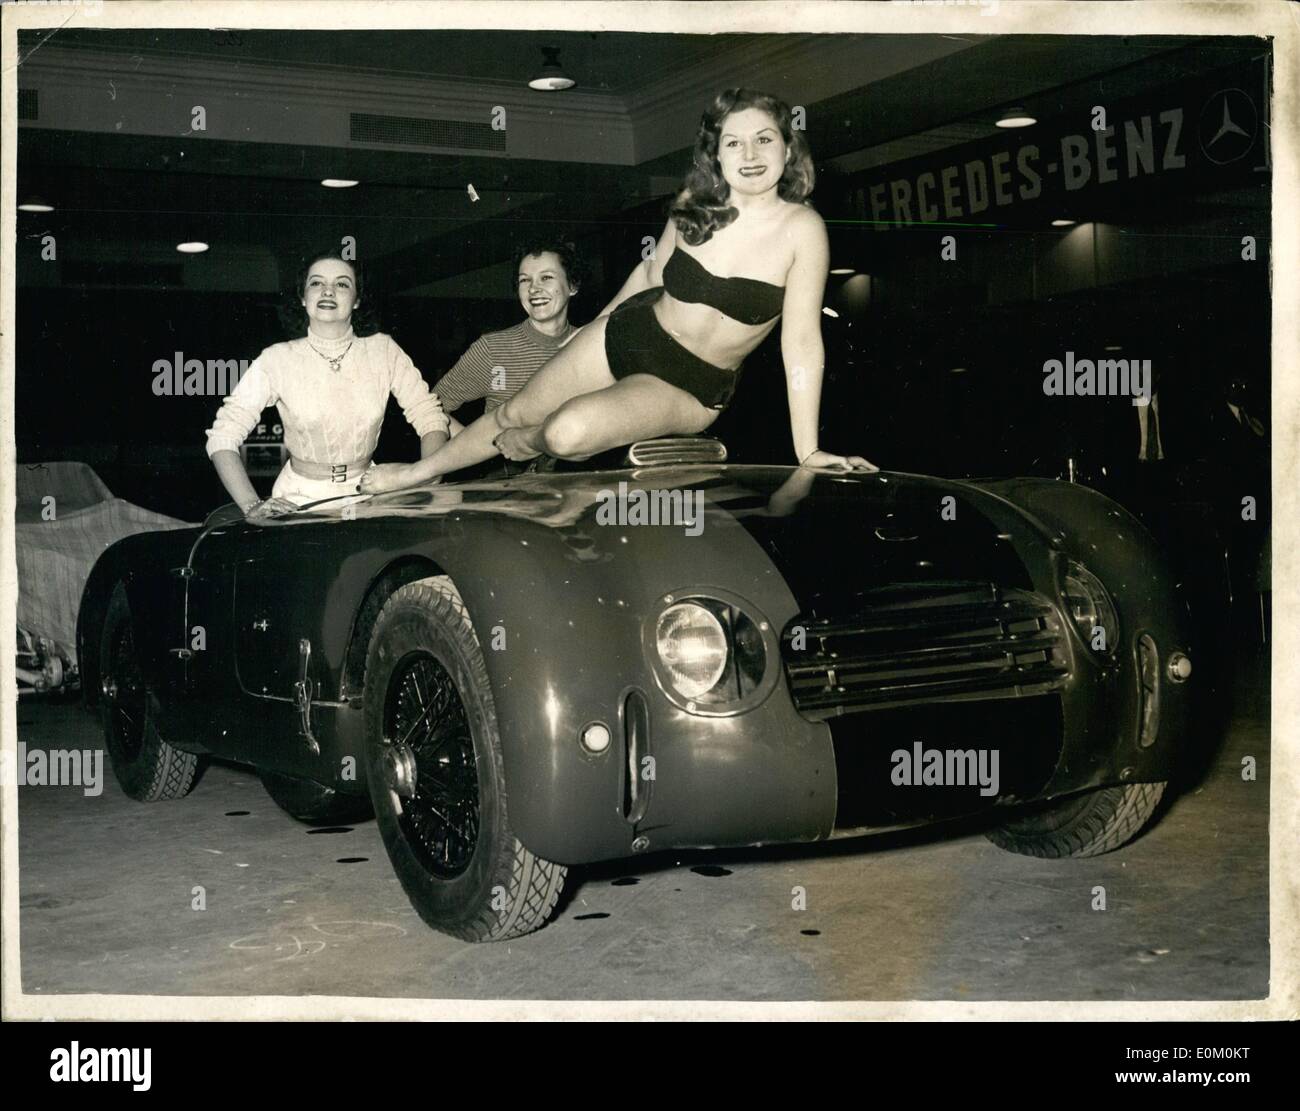 10 févr. 02, 1953 - Le monde du sport automobile Show au Madison Square Garden. La photo montre la voiture de sport 1953 Allard une des pièces vues sur le salon de New York. Banque D'Images